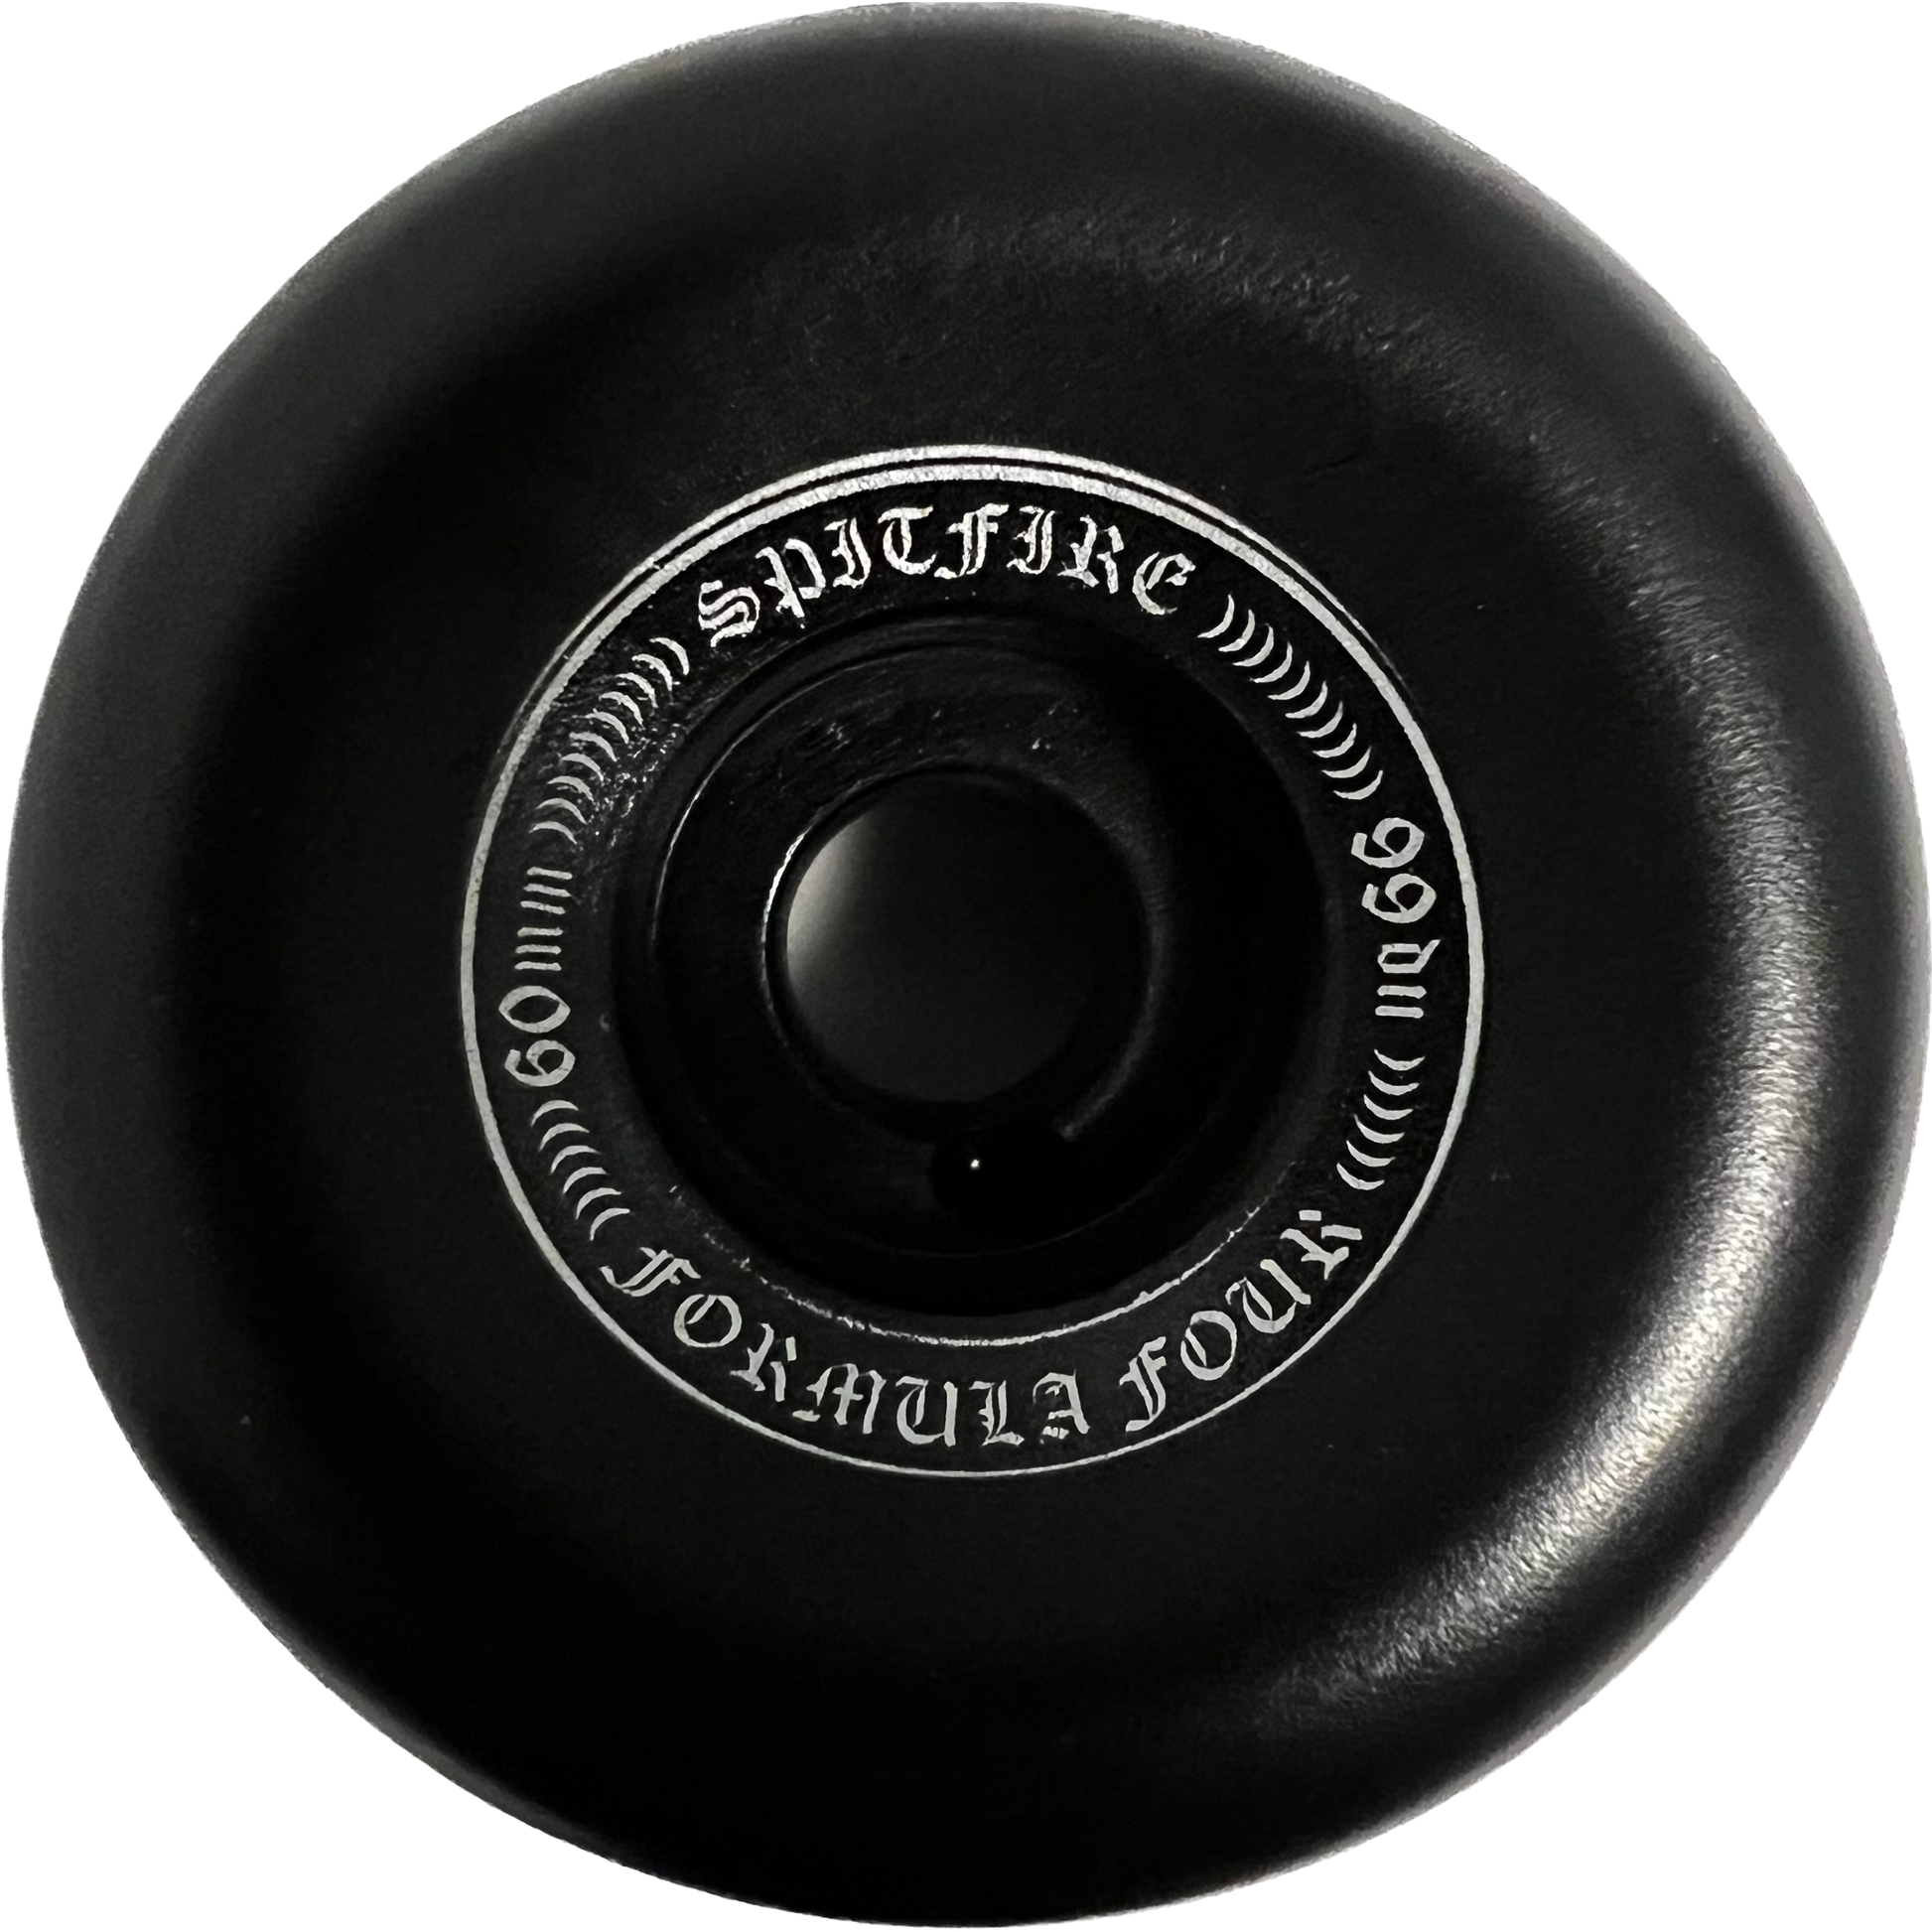 Spitfire Formula Four OG Classic 60mm 99d Set Of 4 Skateboard Wheels Black